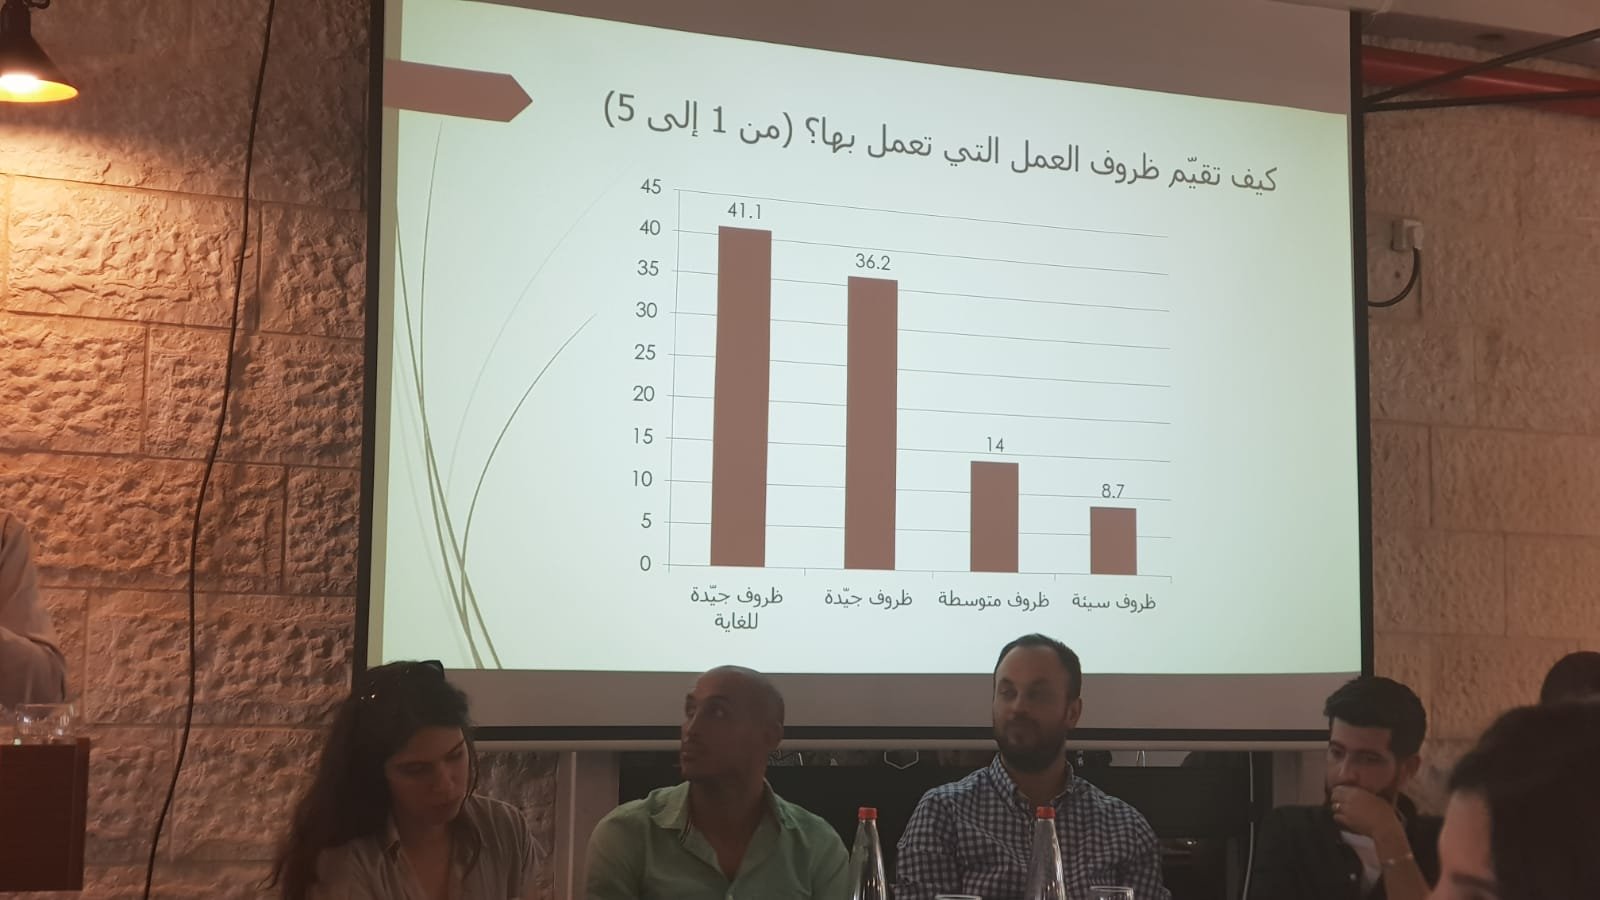 مؤتمر "قضايا الشباب": عرض نتائج بحث حول احتياجات وتصورات ومواقف الشباب في الداخل الفلسطيني-7